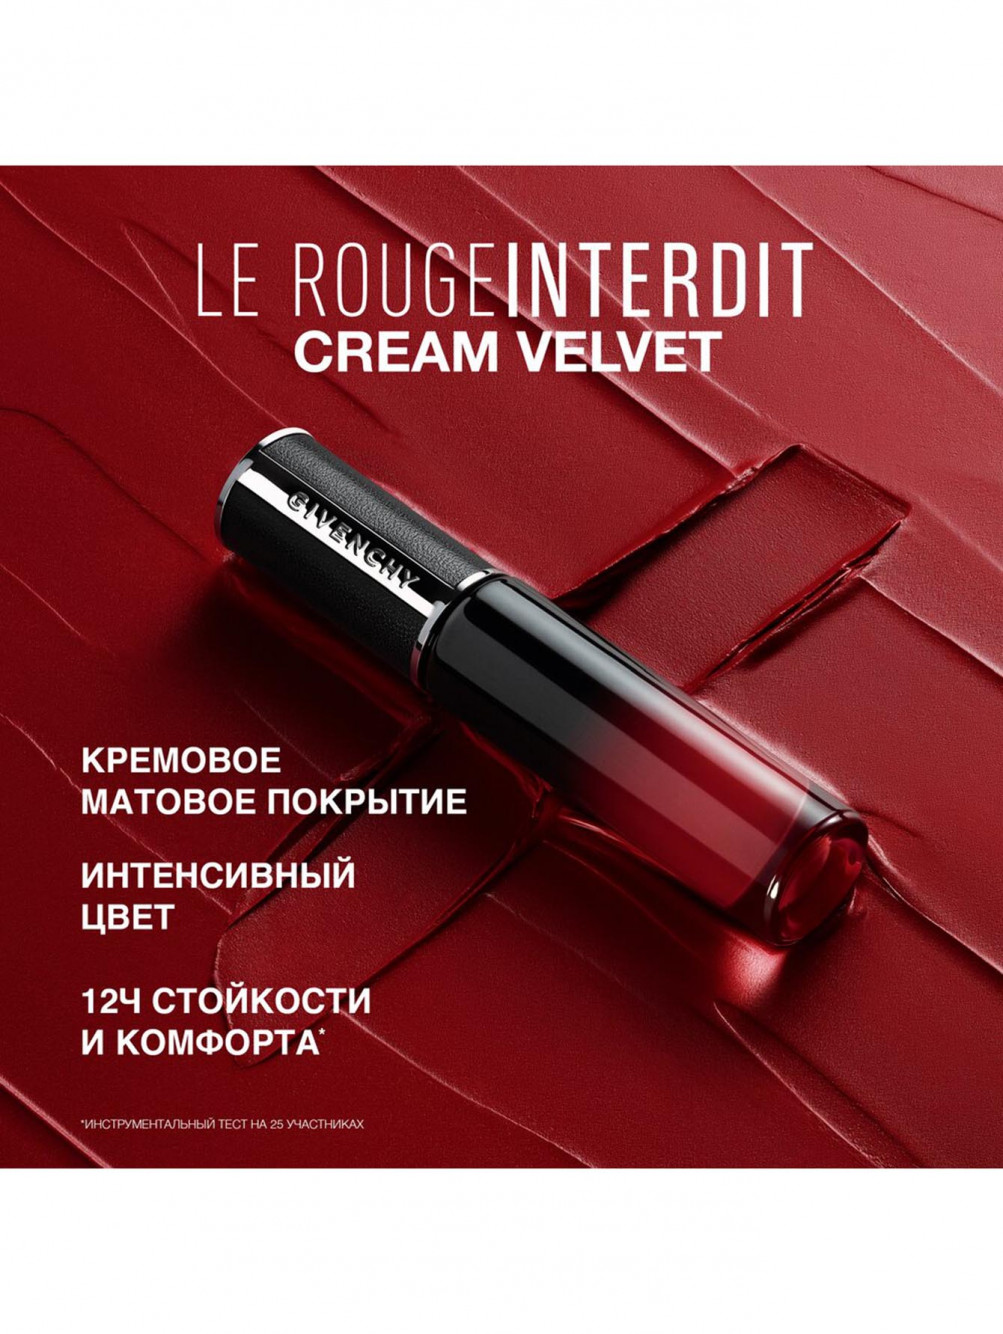 Жидкая матовая помада для губ Le Rouge Interdit Cream Velvet, оттенок 27, 6,5 мл - Обтравка4